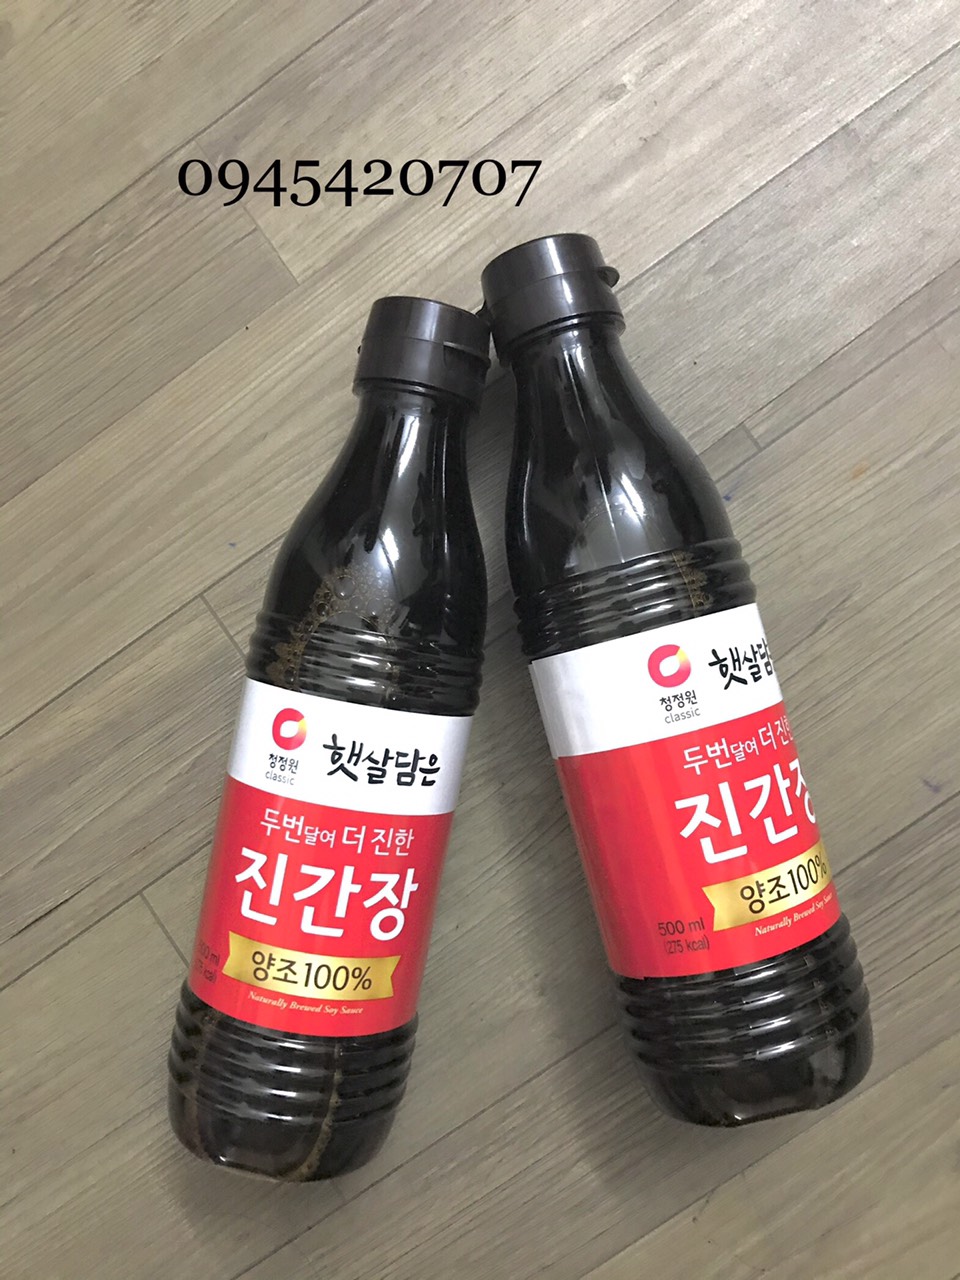 Nước tương xì dầu Hàn Quốc 500ml - Nắp Đen sản phẩm tốt chất lượng cao đảm